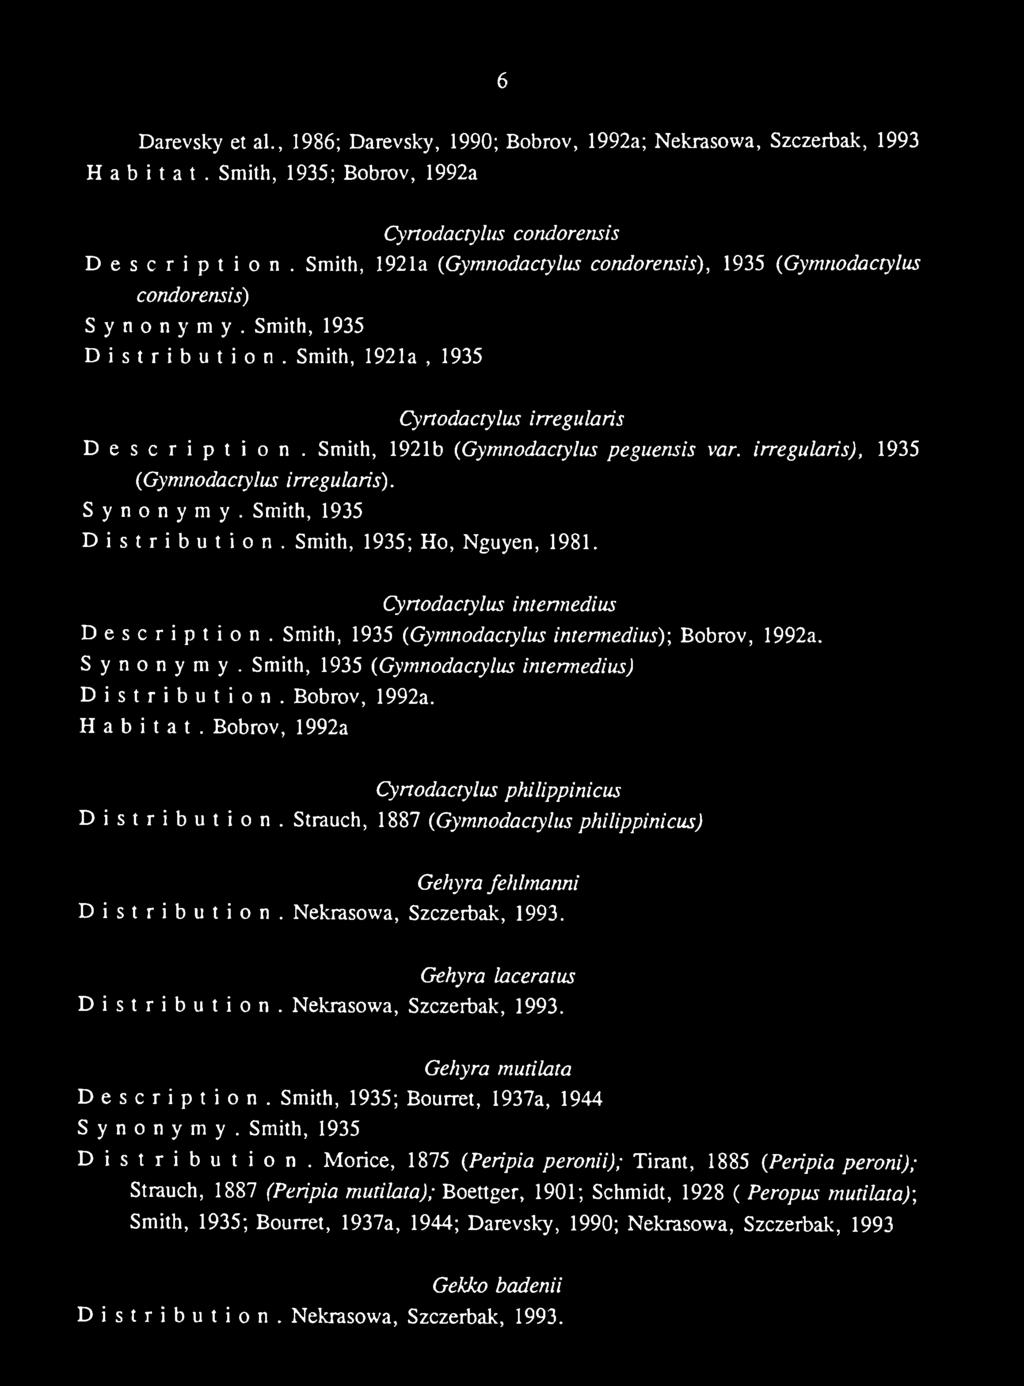 Nekrasowa, Szczerbak, 1993. Gehyra laceratus Distribution. Nekrasowa, Szczerbak, 1993. Gehyra mutilata Description. Smith, 1935; Bourret, 1937a, 1944 Distribution.